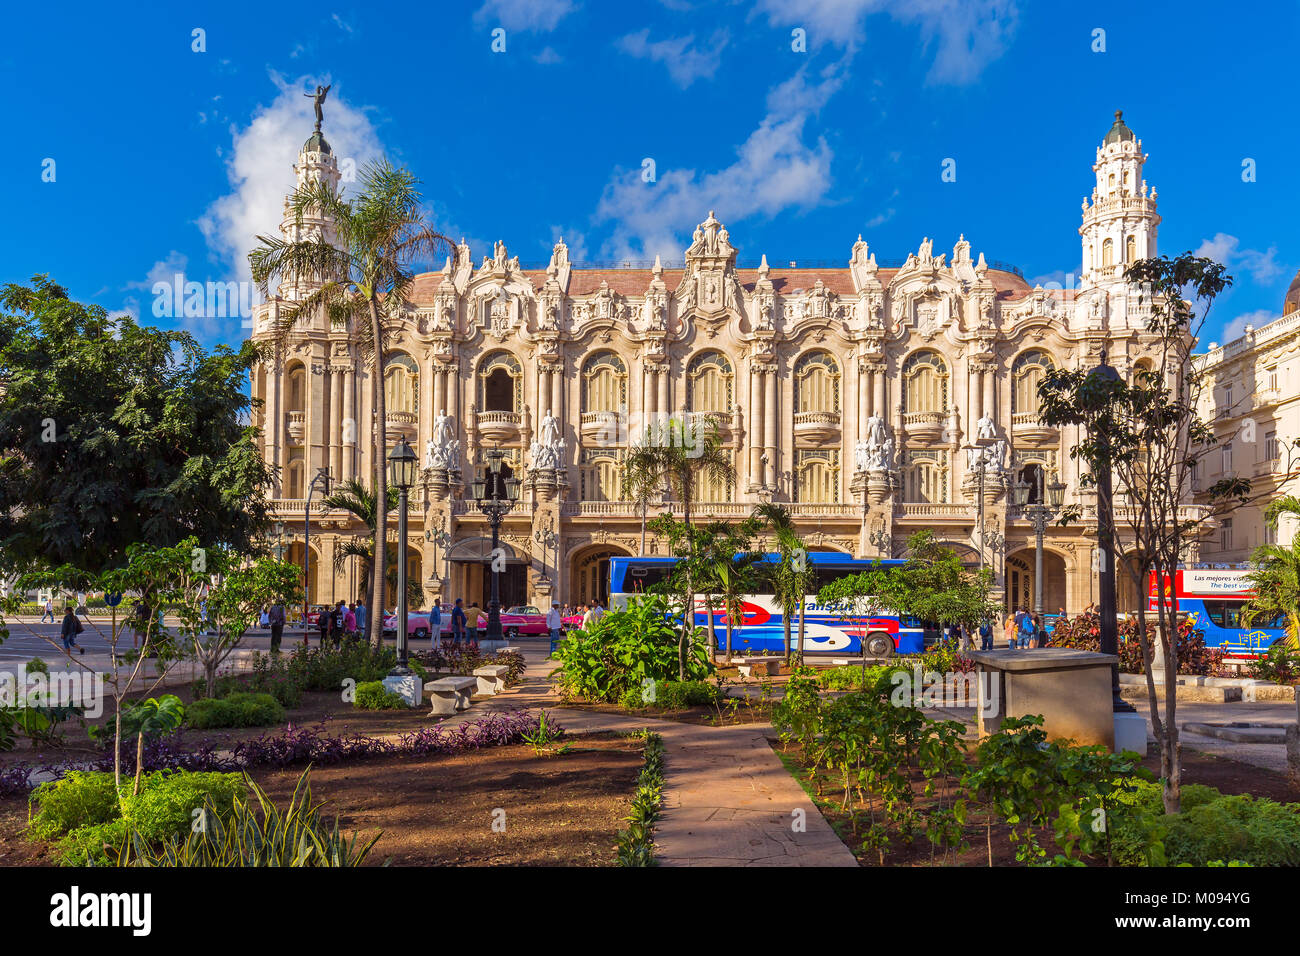 Gran Teatro teatro in Old Havana Cuba Foto Stock